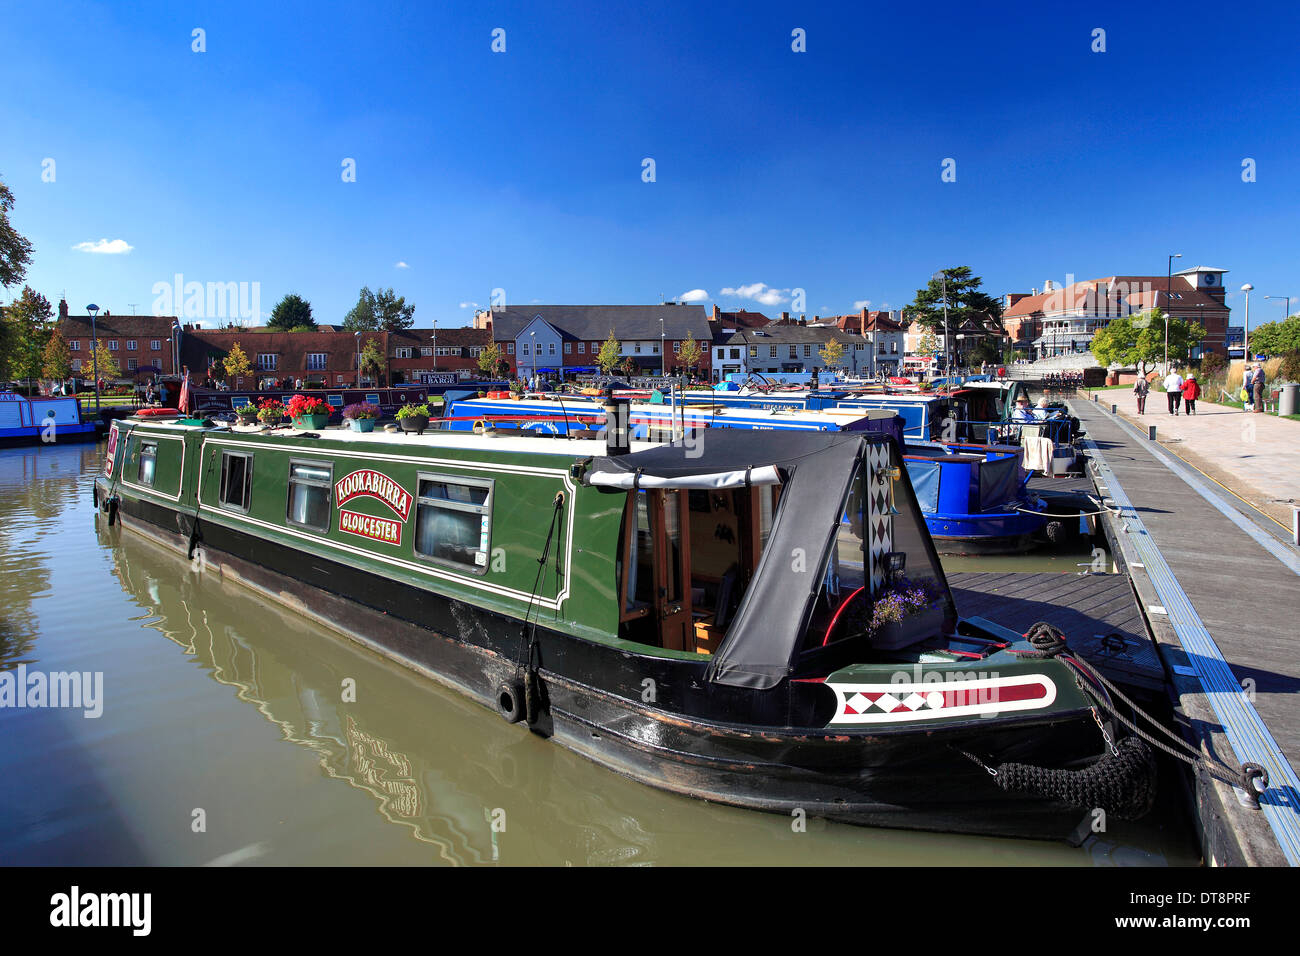 Narrowboats dans le bateau moorings à Bancroft jardins sur la rivière Avon, Stratford upon Avon, Warwickshire, Angleterre ville ; la Grande-Bretagne Banque D'Images